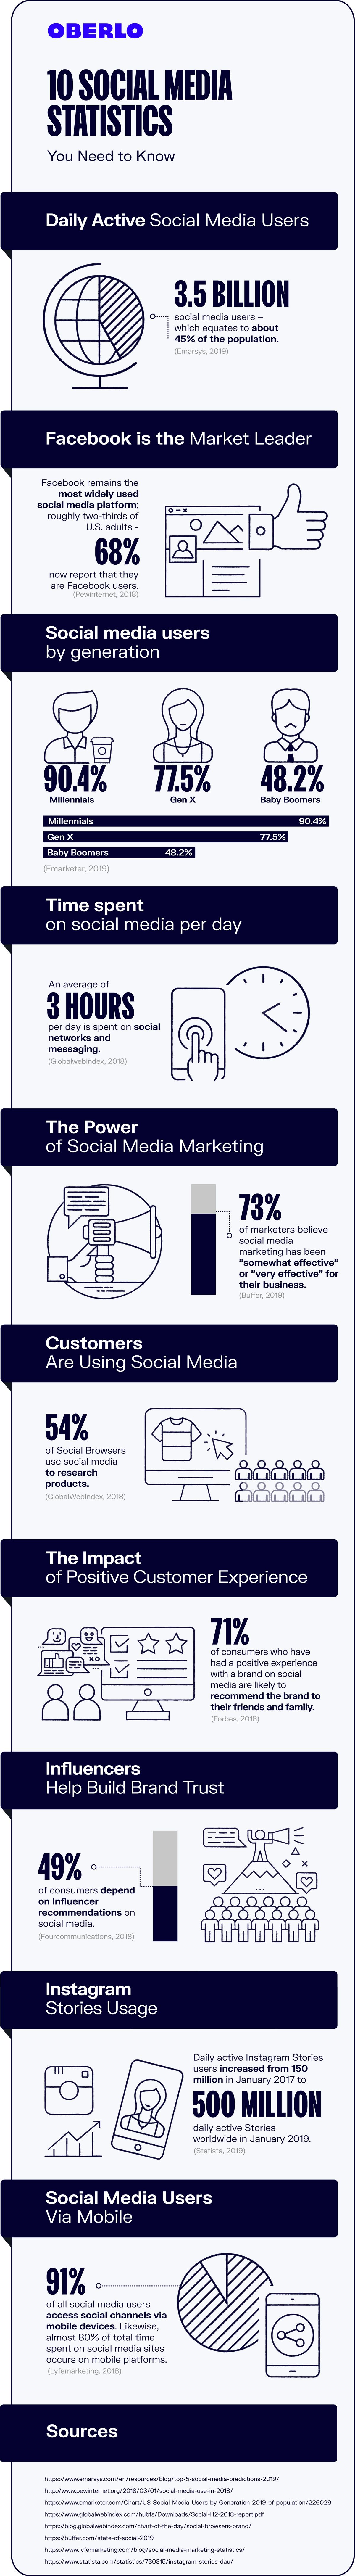 إحصائيات التسويق عبر وسائل التواصل الاجتماعي 2020